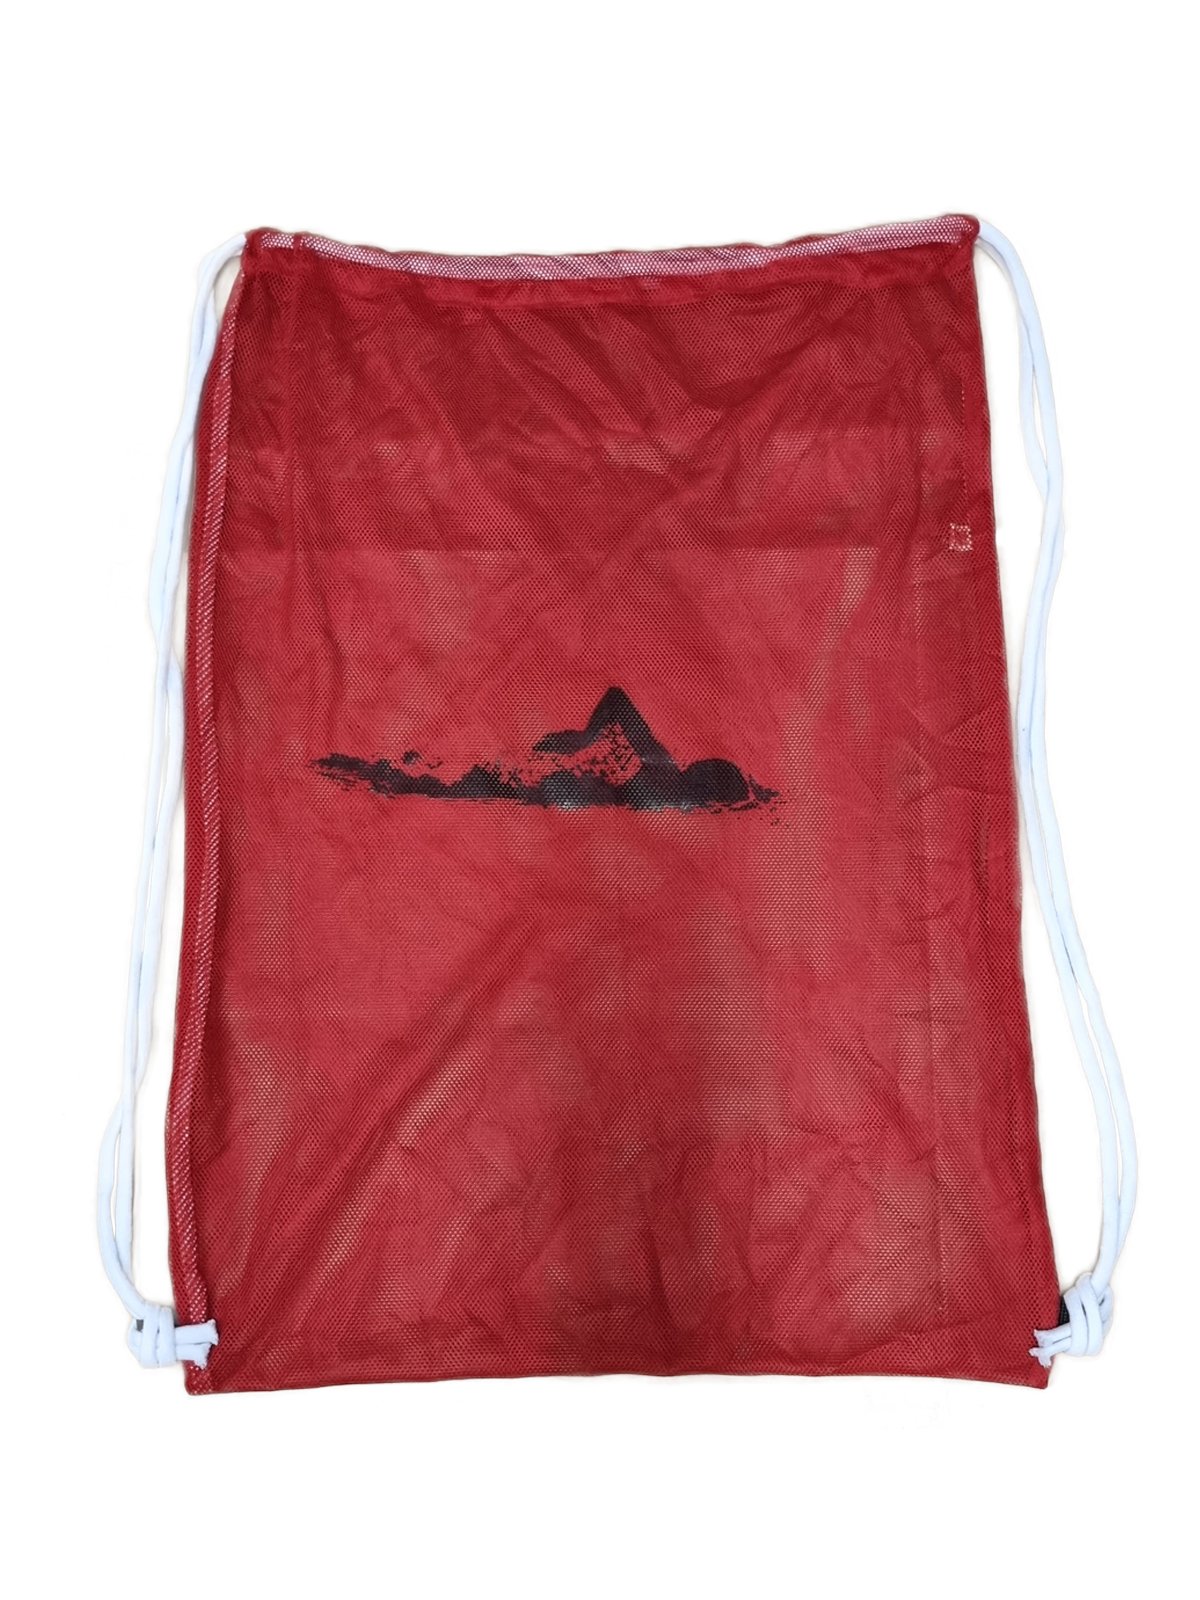 Bufors Yüzücü Kırmızı File Çanta, Beyaz İpli Baskılı Antrenman Çantası (67x50±)